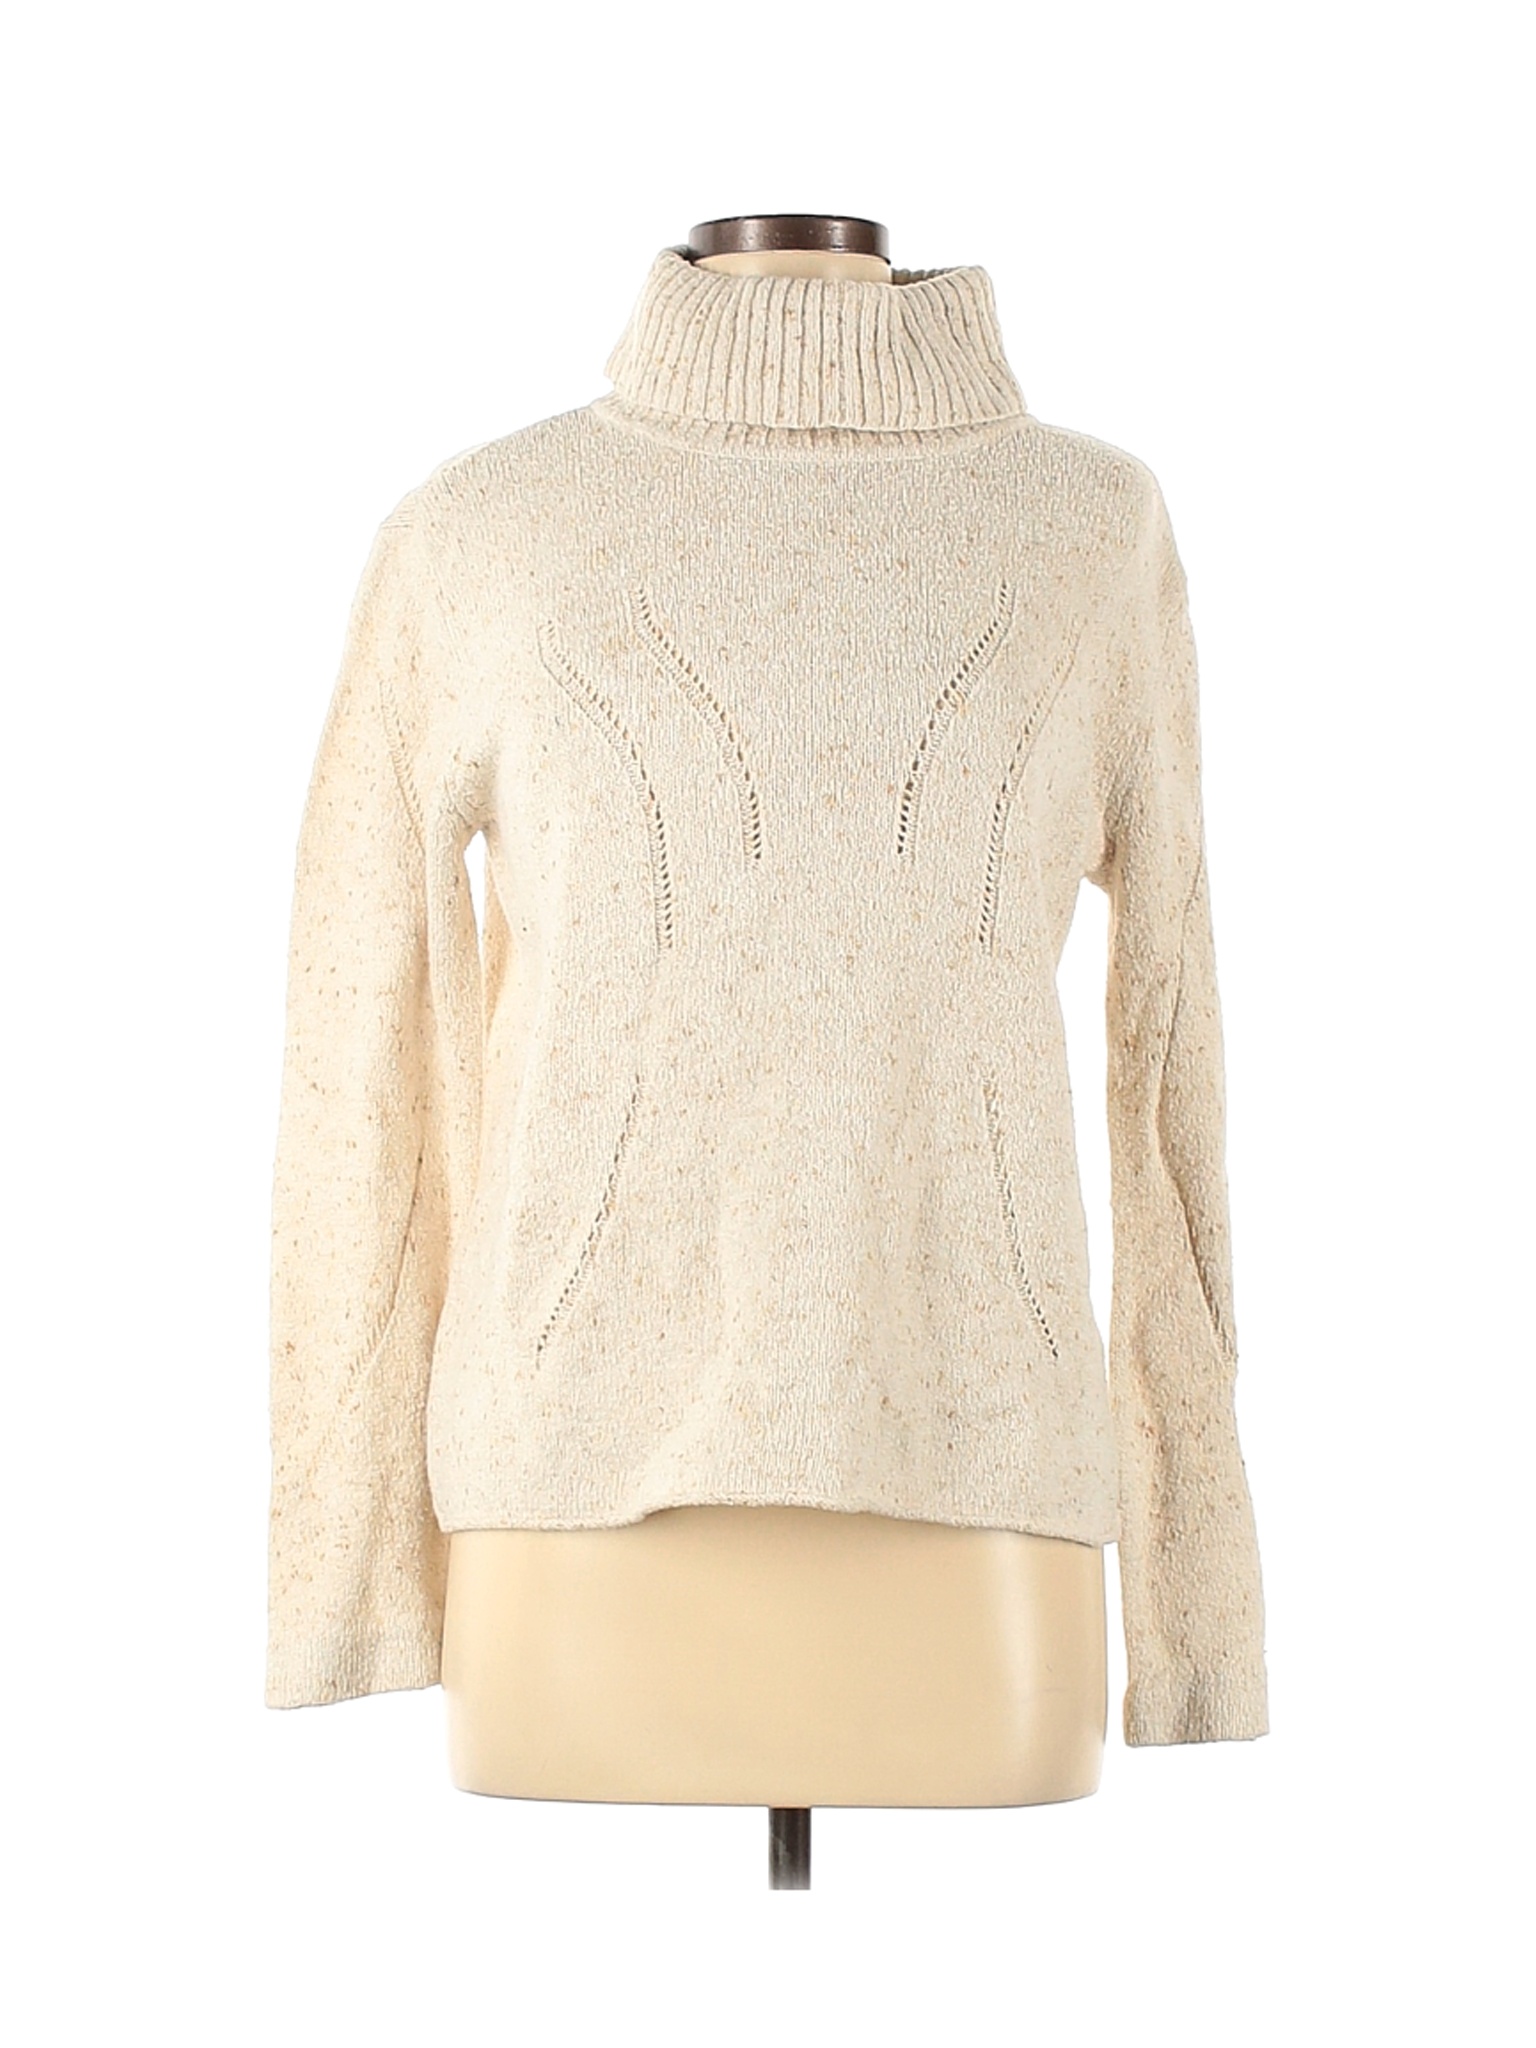 J.Jill Women Ivory Turtleneck Sweater M | eBay